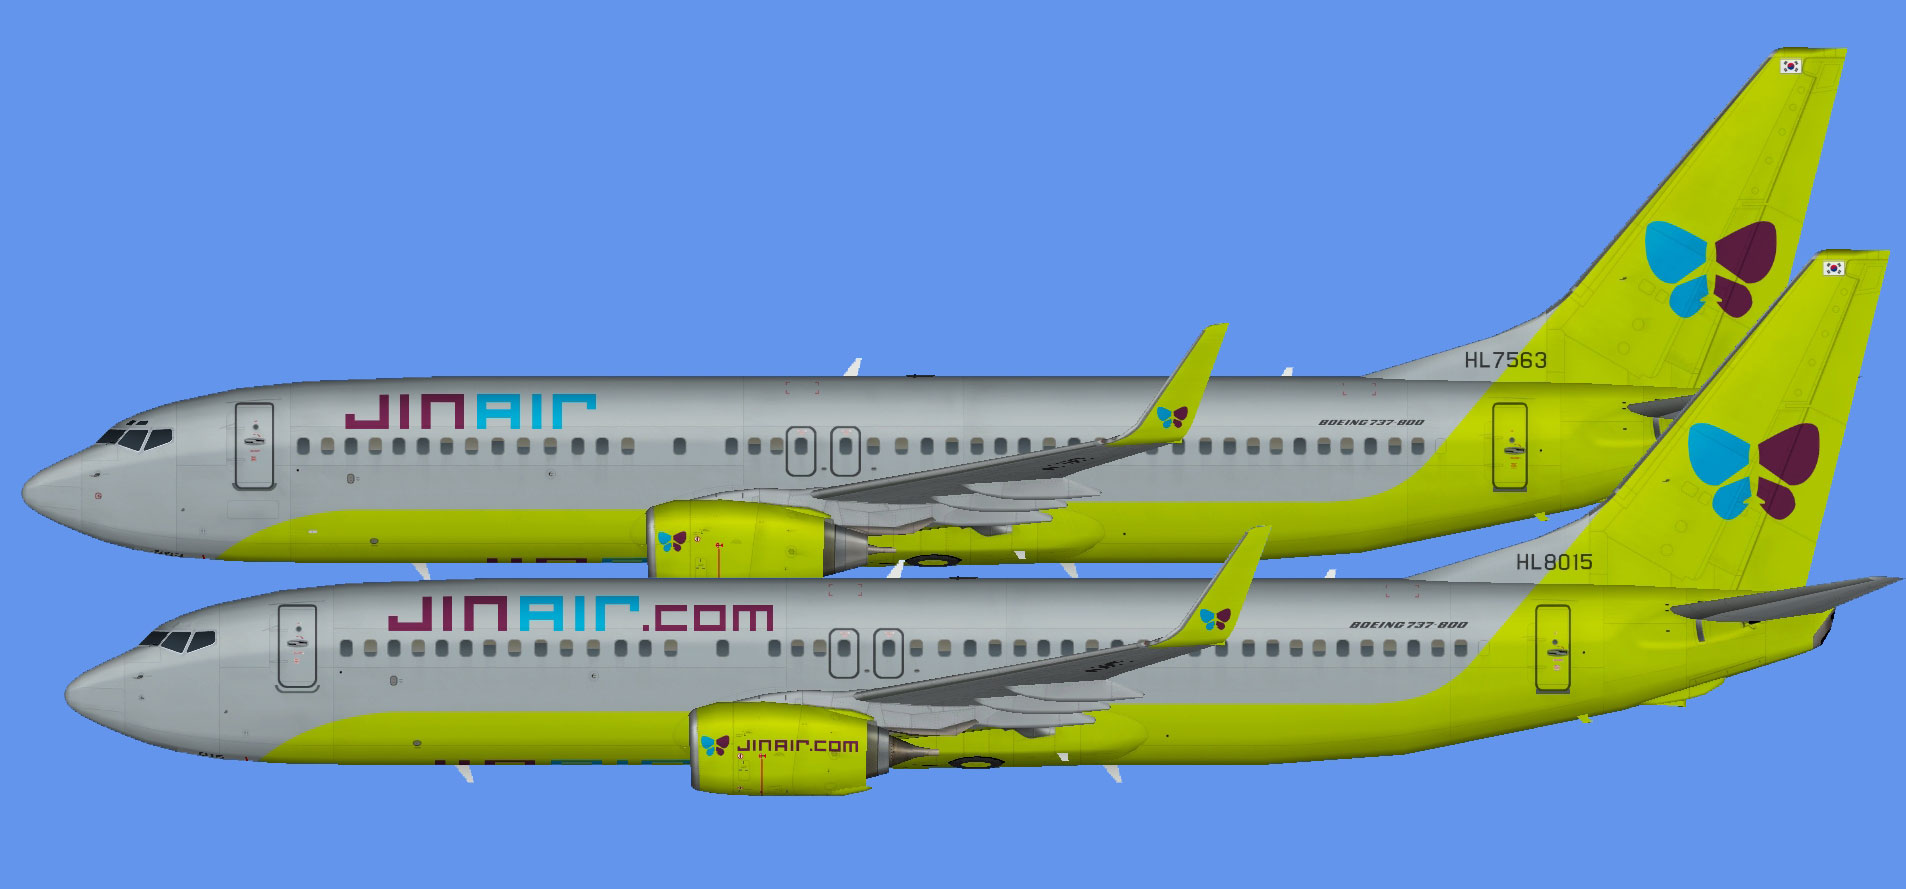 Jin Air Boeing 737-800 (winglets)